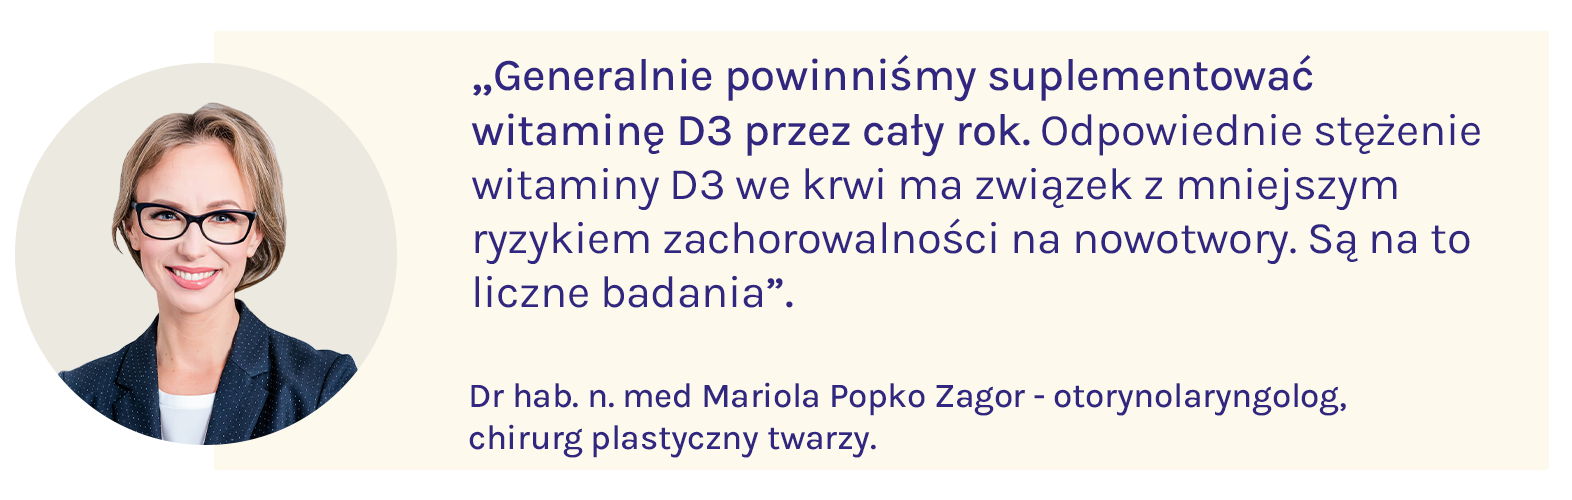 dr hab. n. med. Mariola Popko Zagor mówi o tym, że witaminę D3 trzeba suplementować przez cały rok